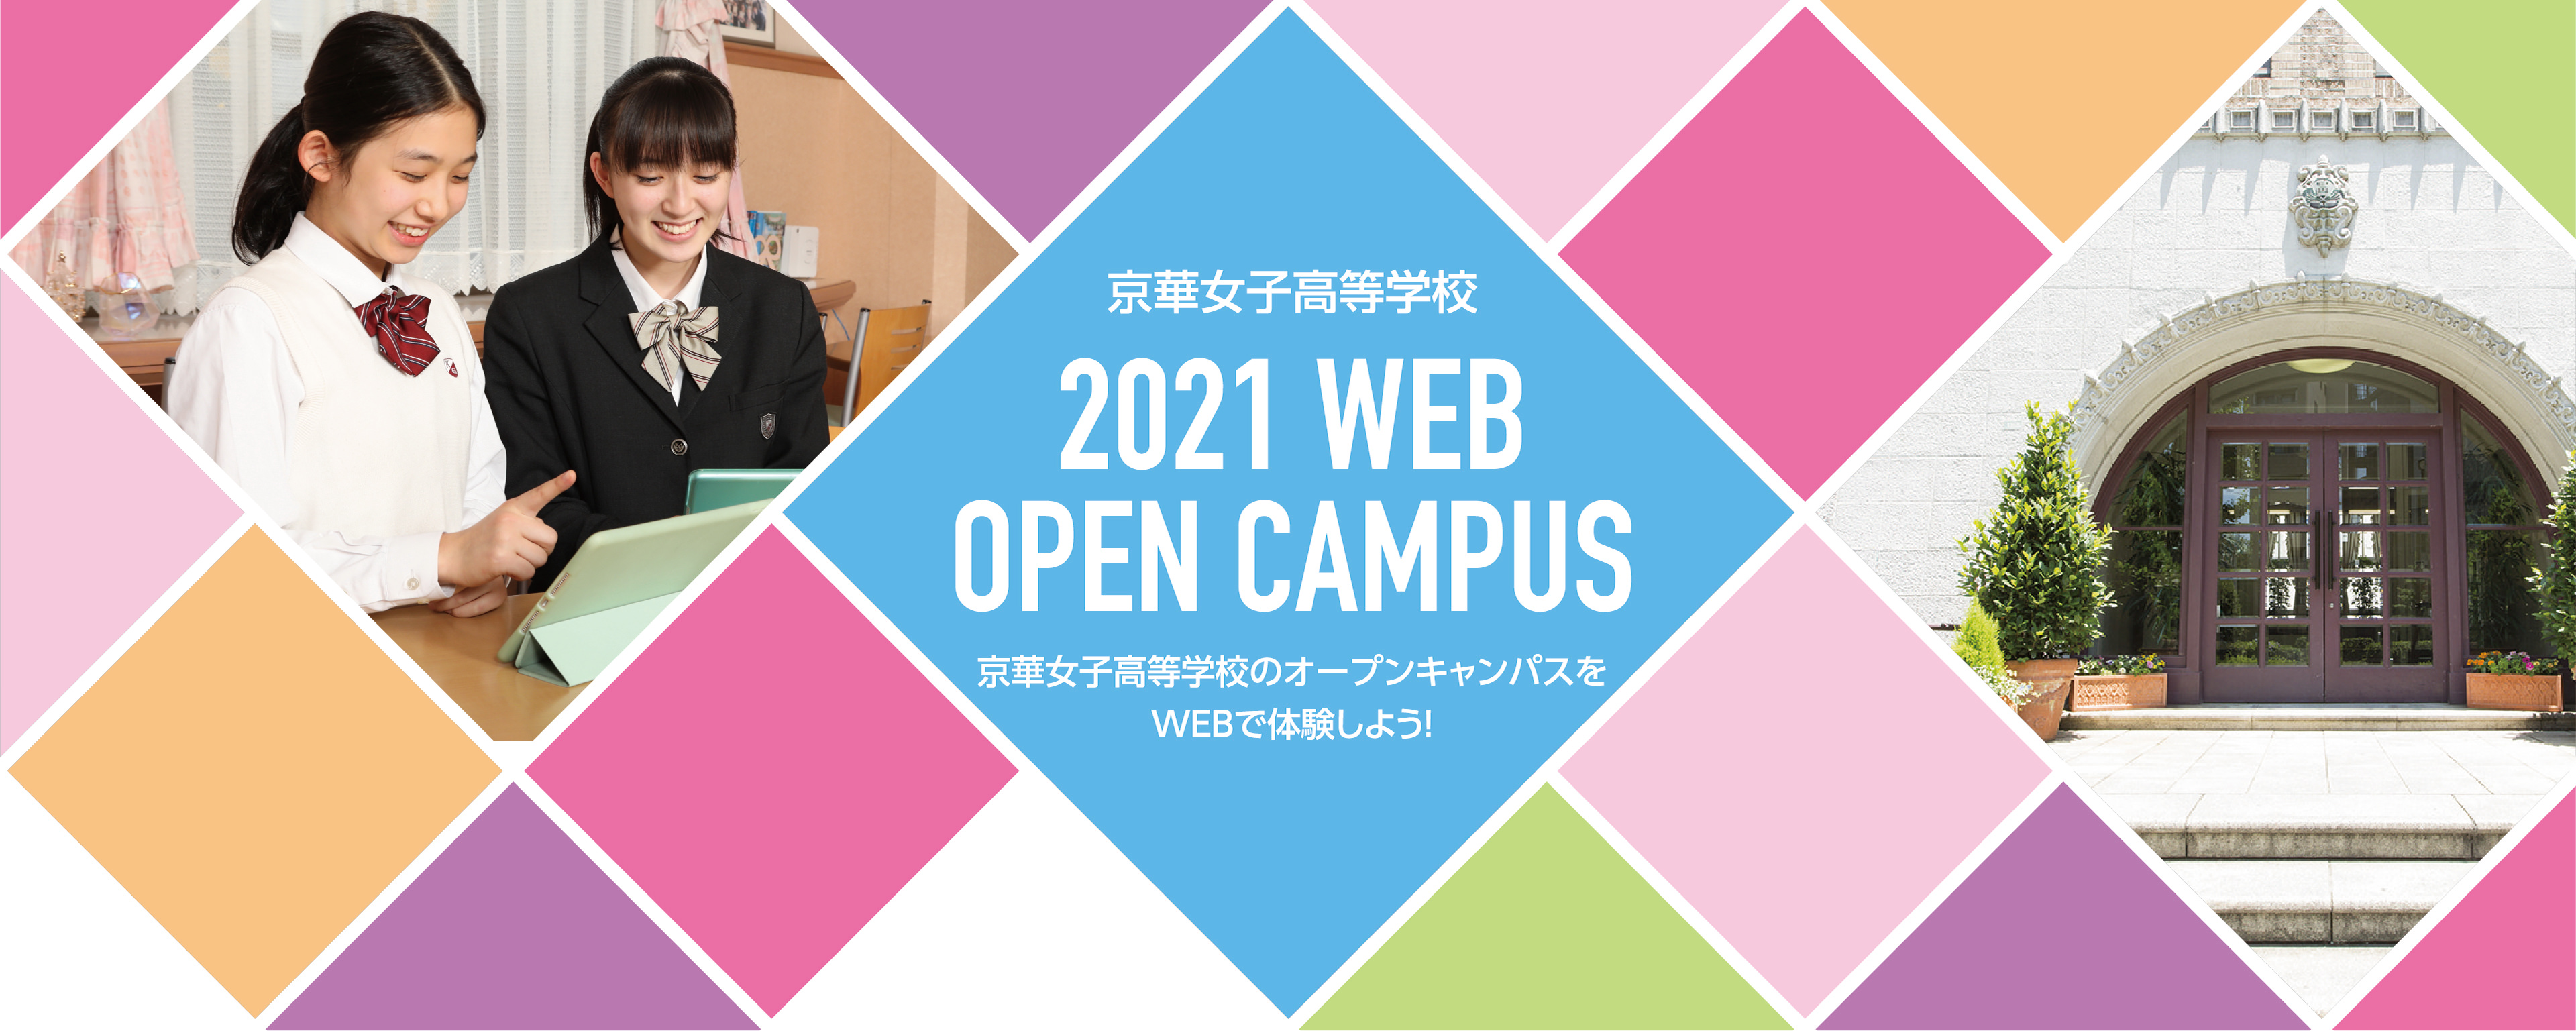 京華女子高等学校 2021 WEB OPEN CAMPUS 京華女子高等学校のオープンキャンパスをWEBで体験しよう!